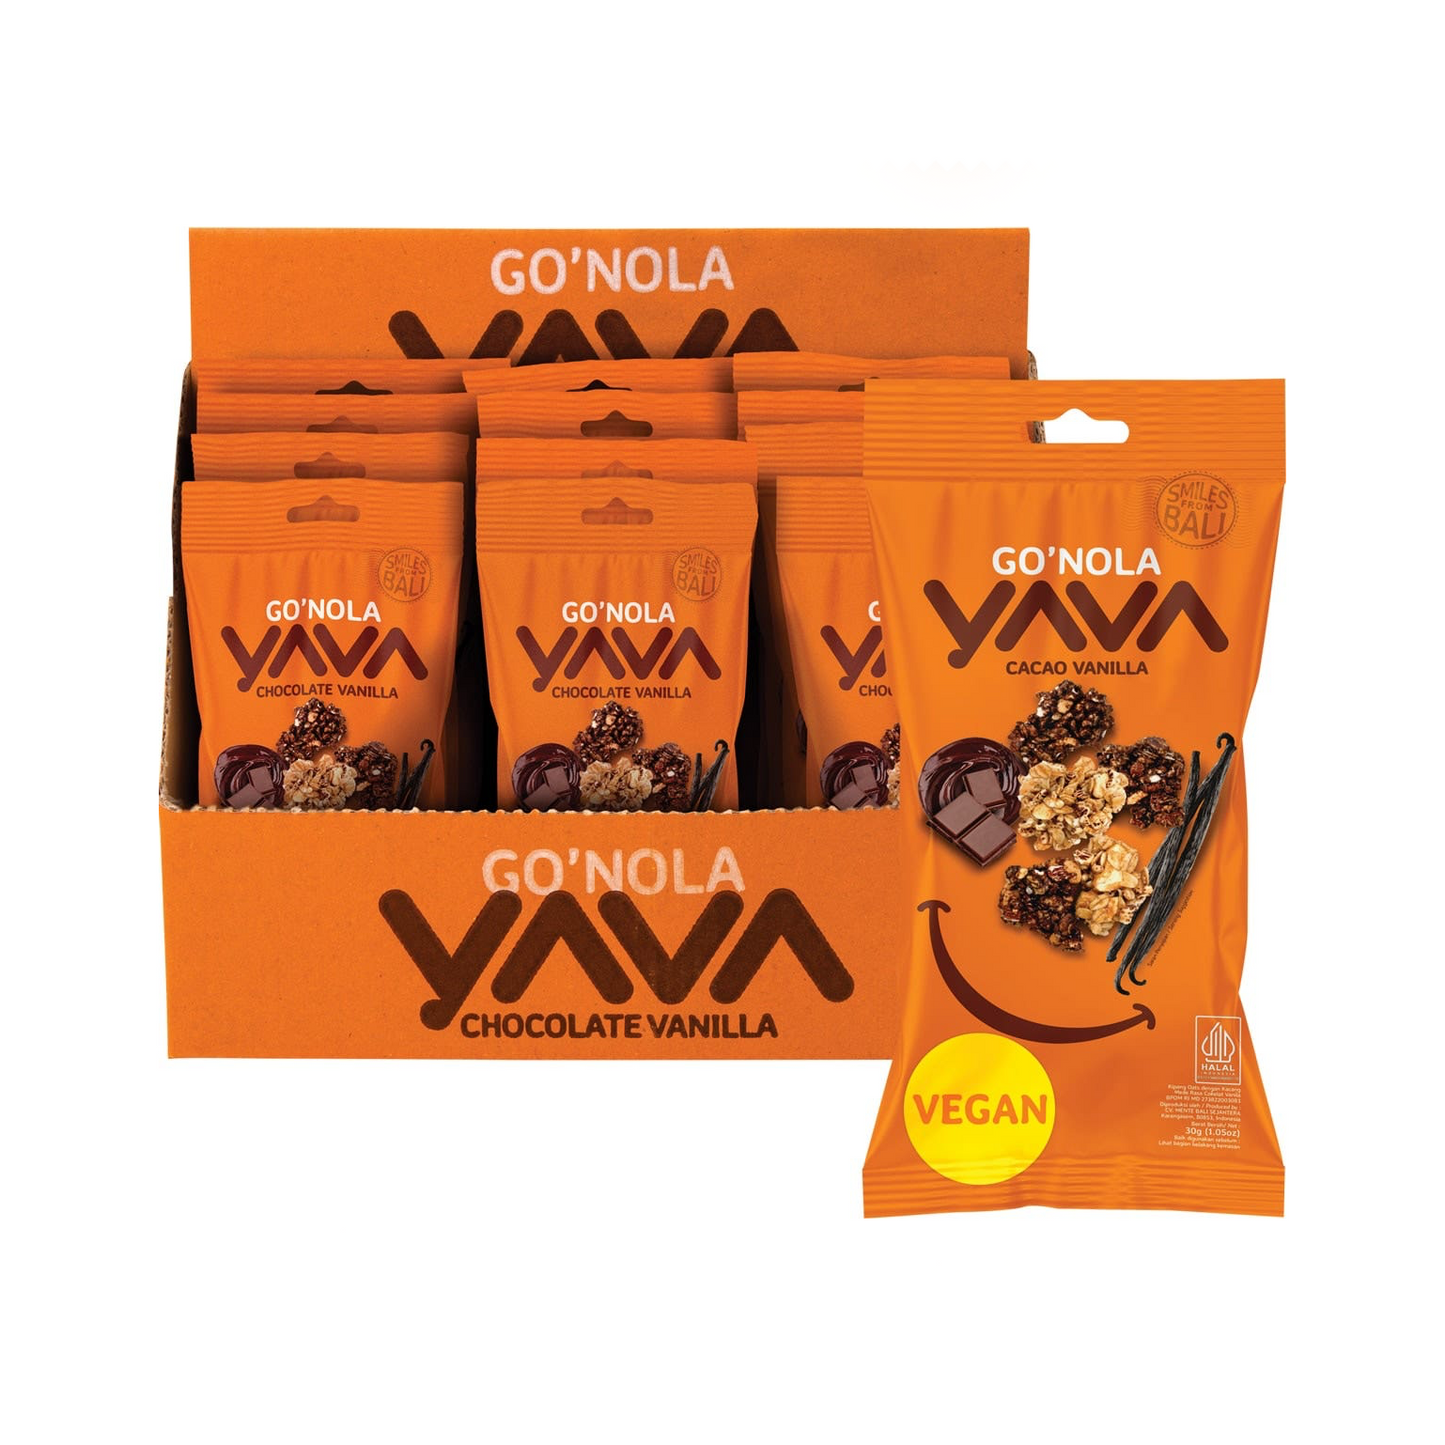 Yava G'Nola Bites 30g Or 12 x 30g, Chocolate Vanilla Flavour